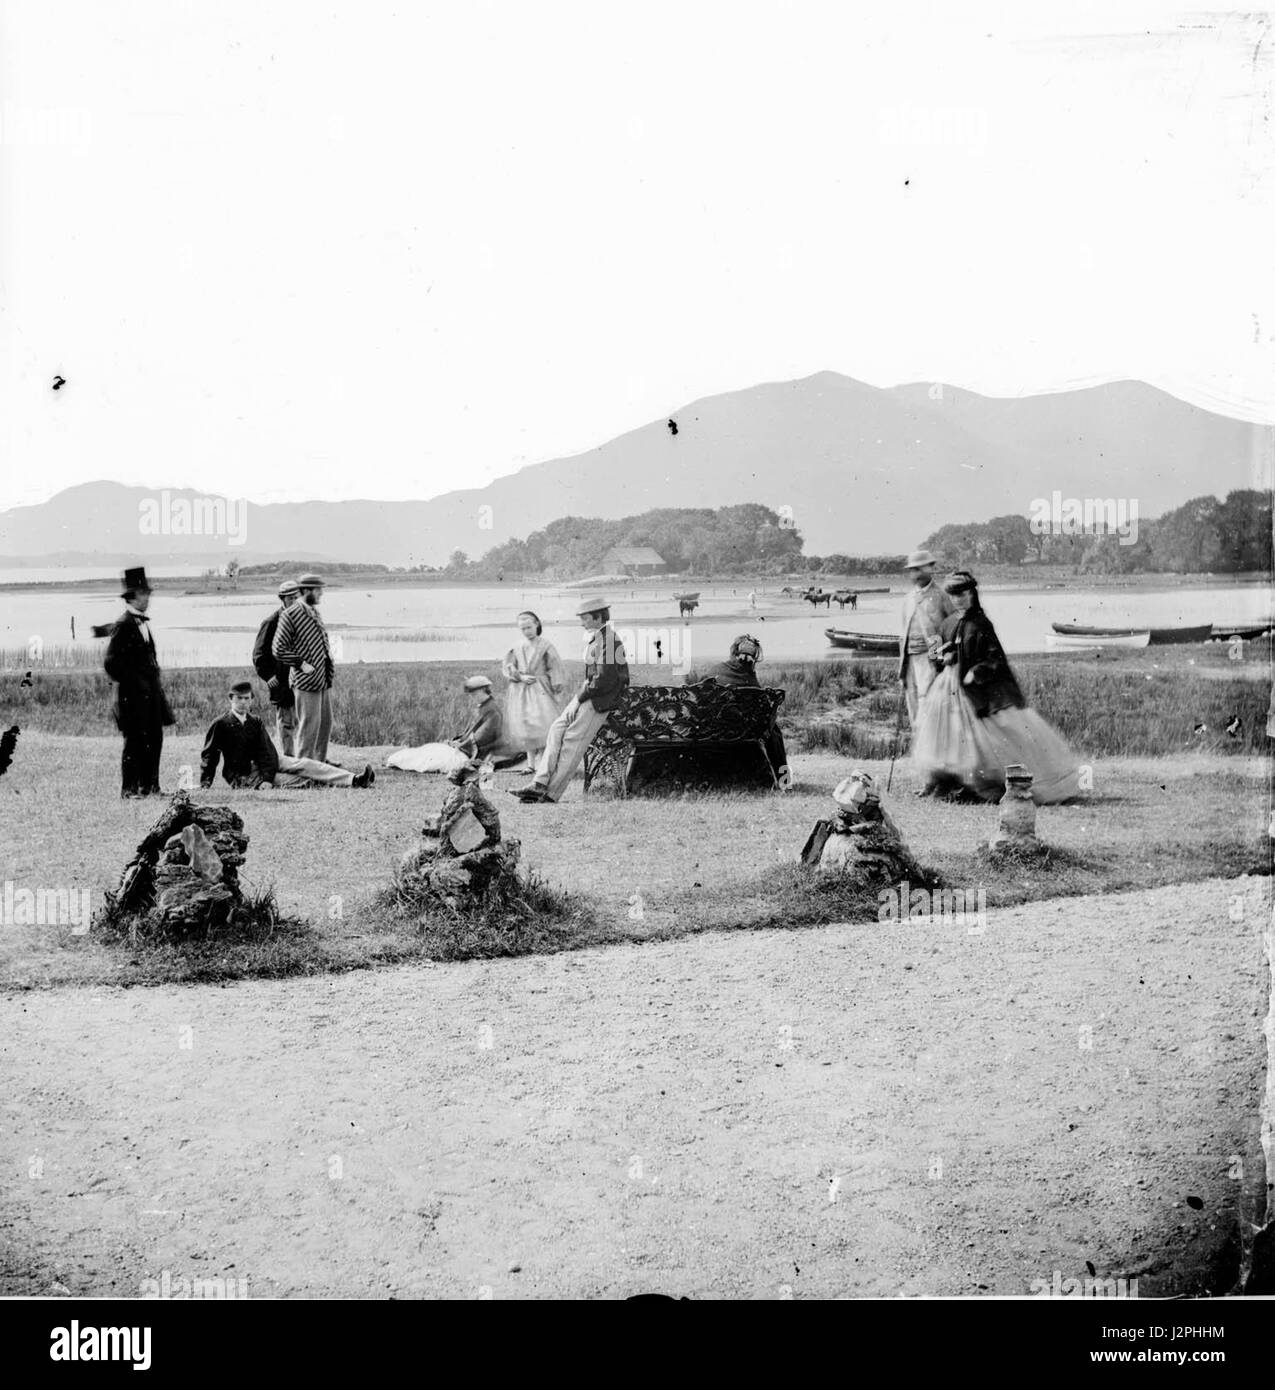 Gruppe von zehn Personen stehend und liegend auf einer Insel oder Halbinsel, mit Hügeln im Hintergrund. Stockfoto